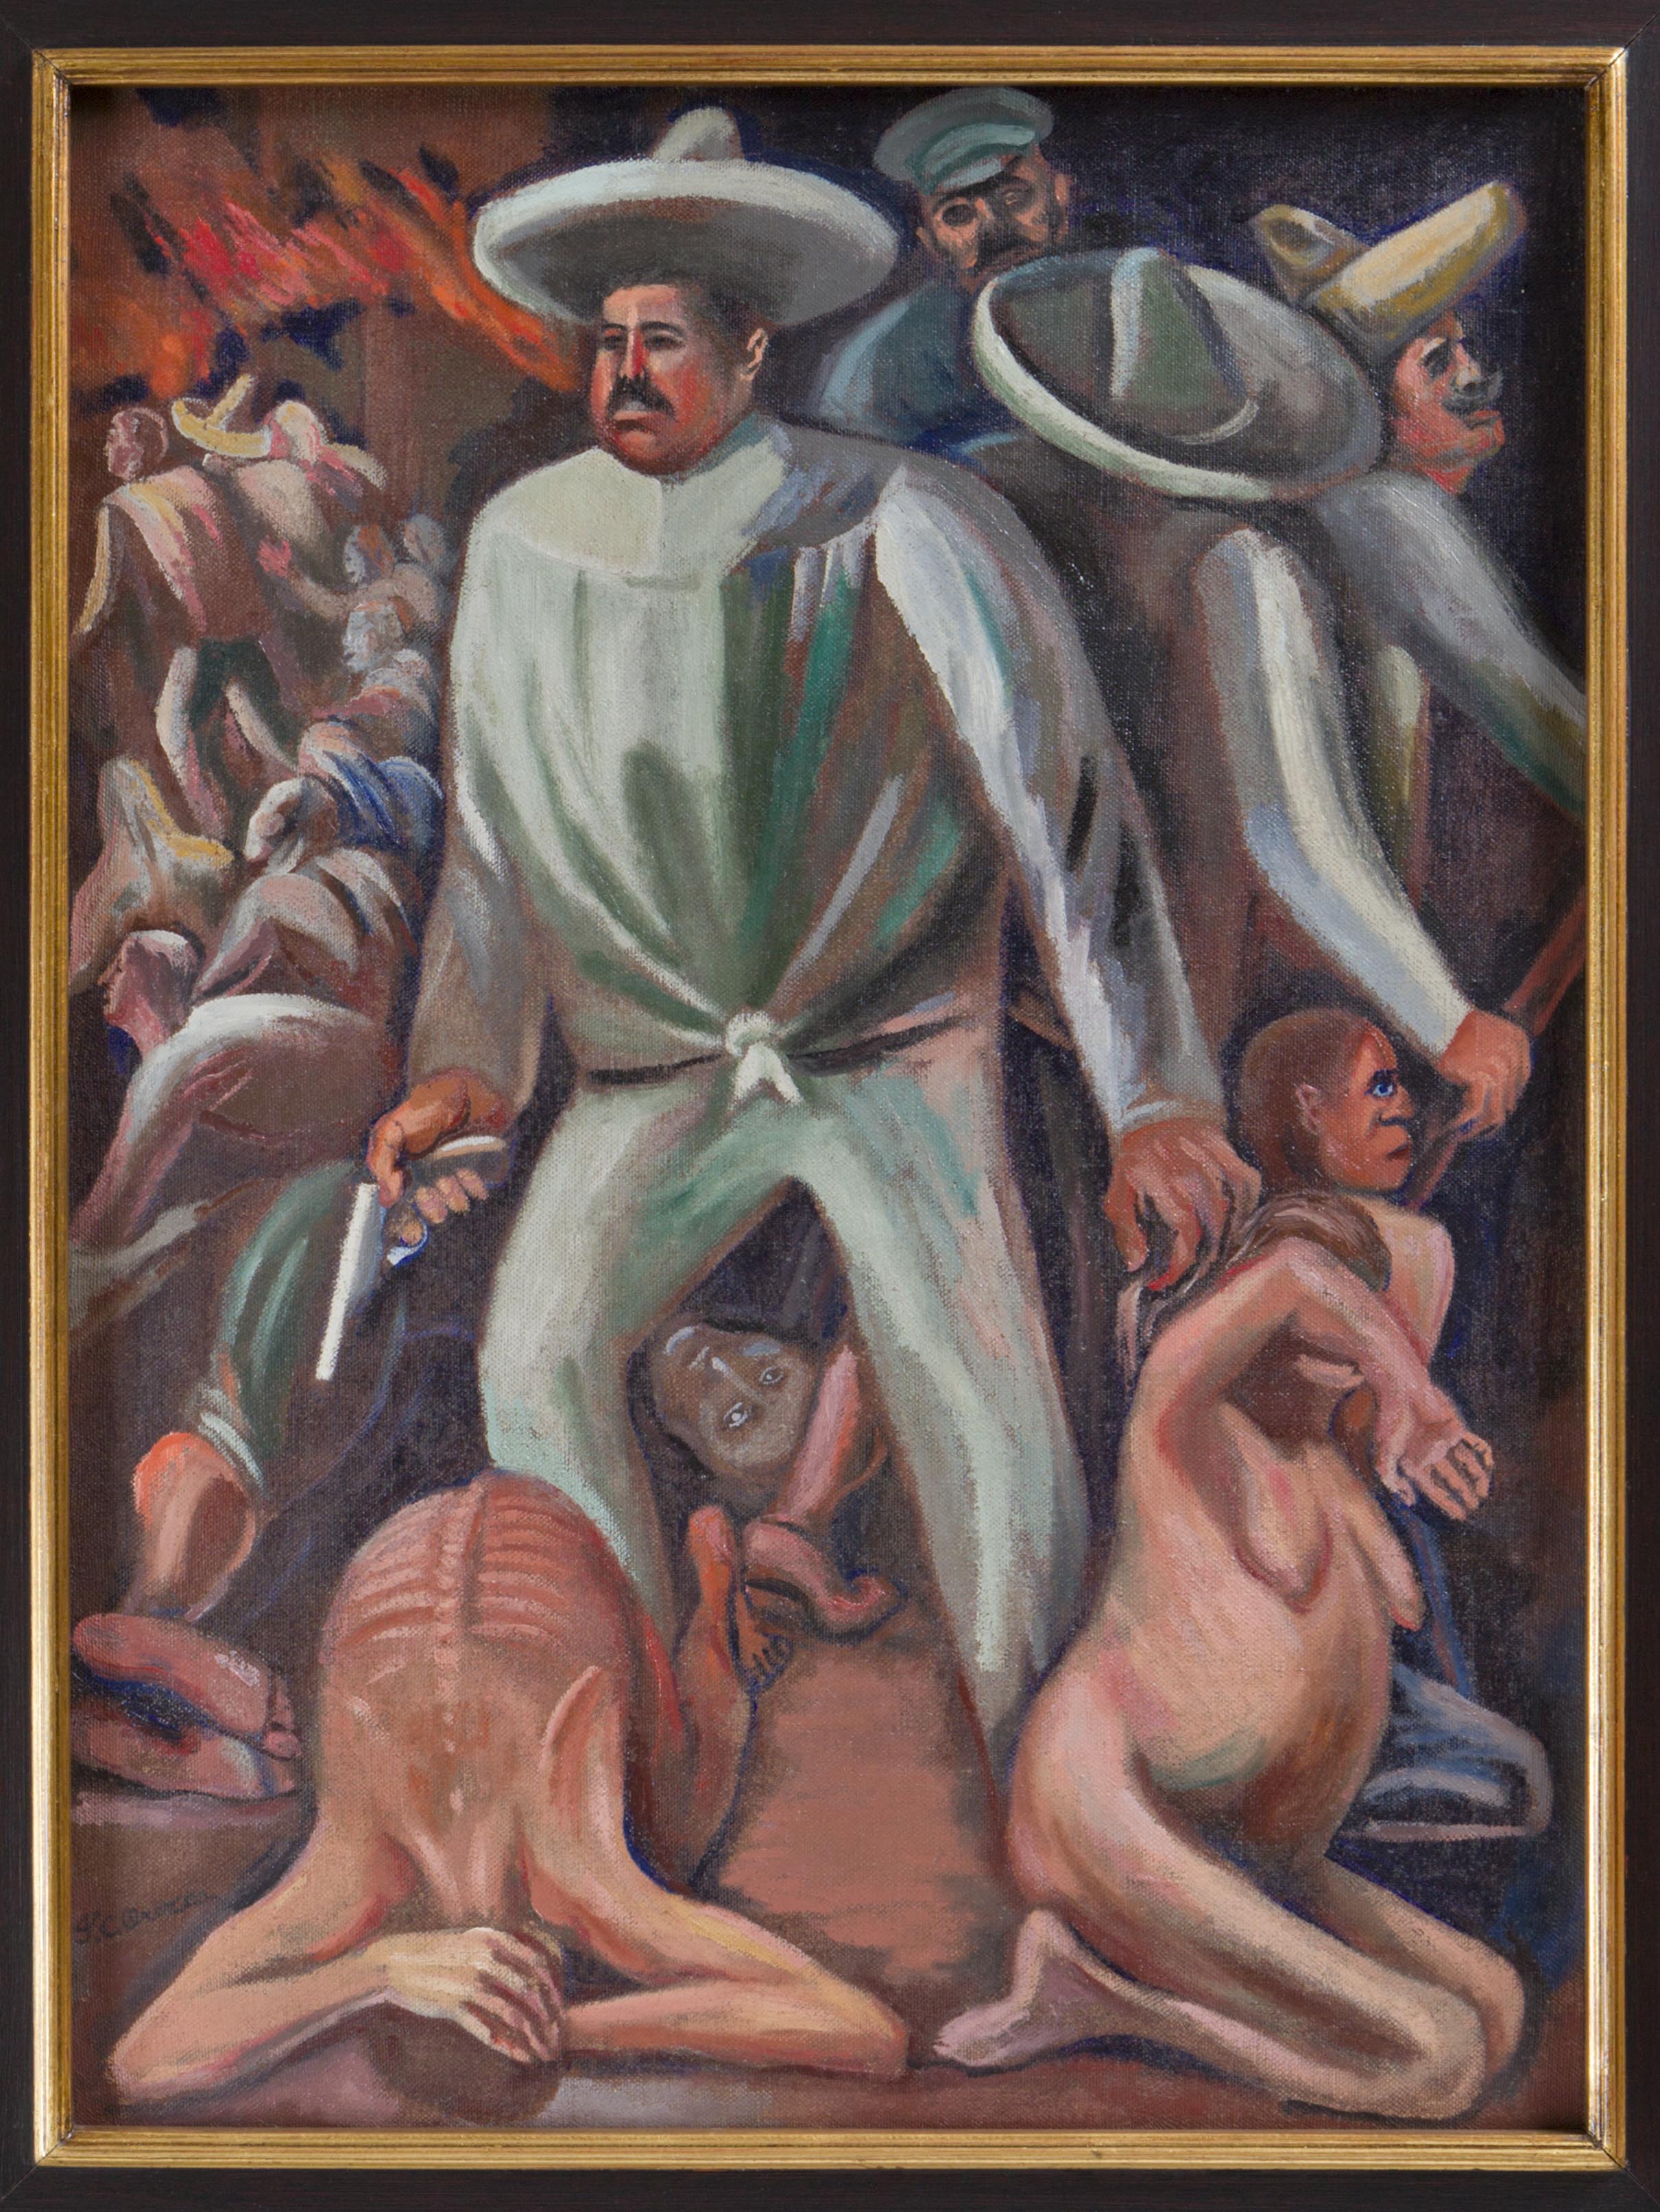 Maestros del muralismo mexicano, en el Museo Nacional de Bellas Artes